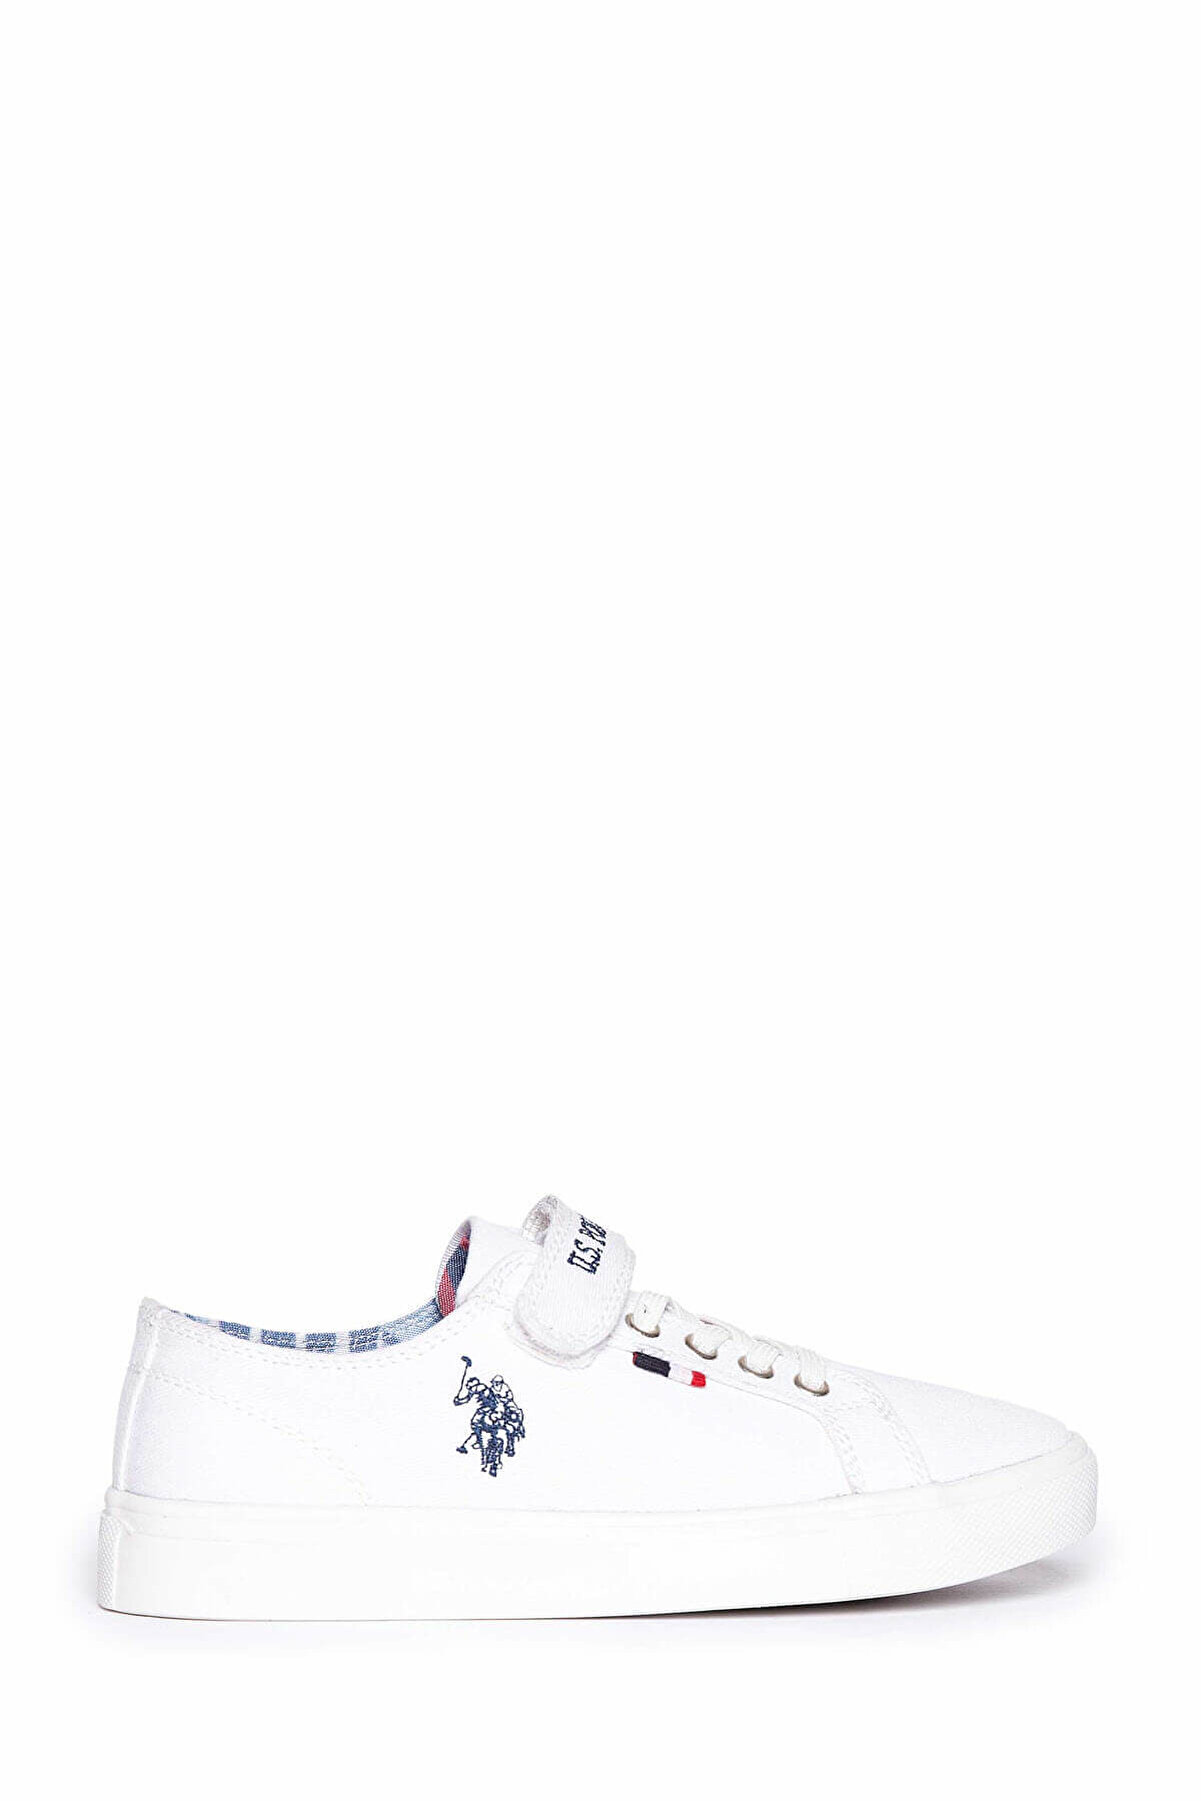 U.S. Polo Assn. Beyaz Erkek Cocuk Ayakkabı